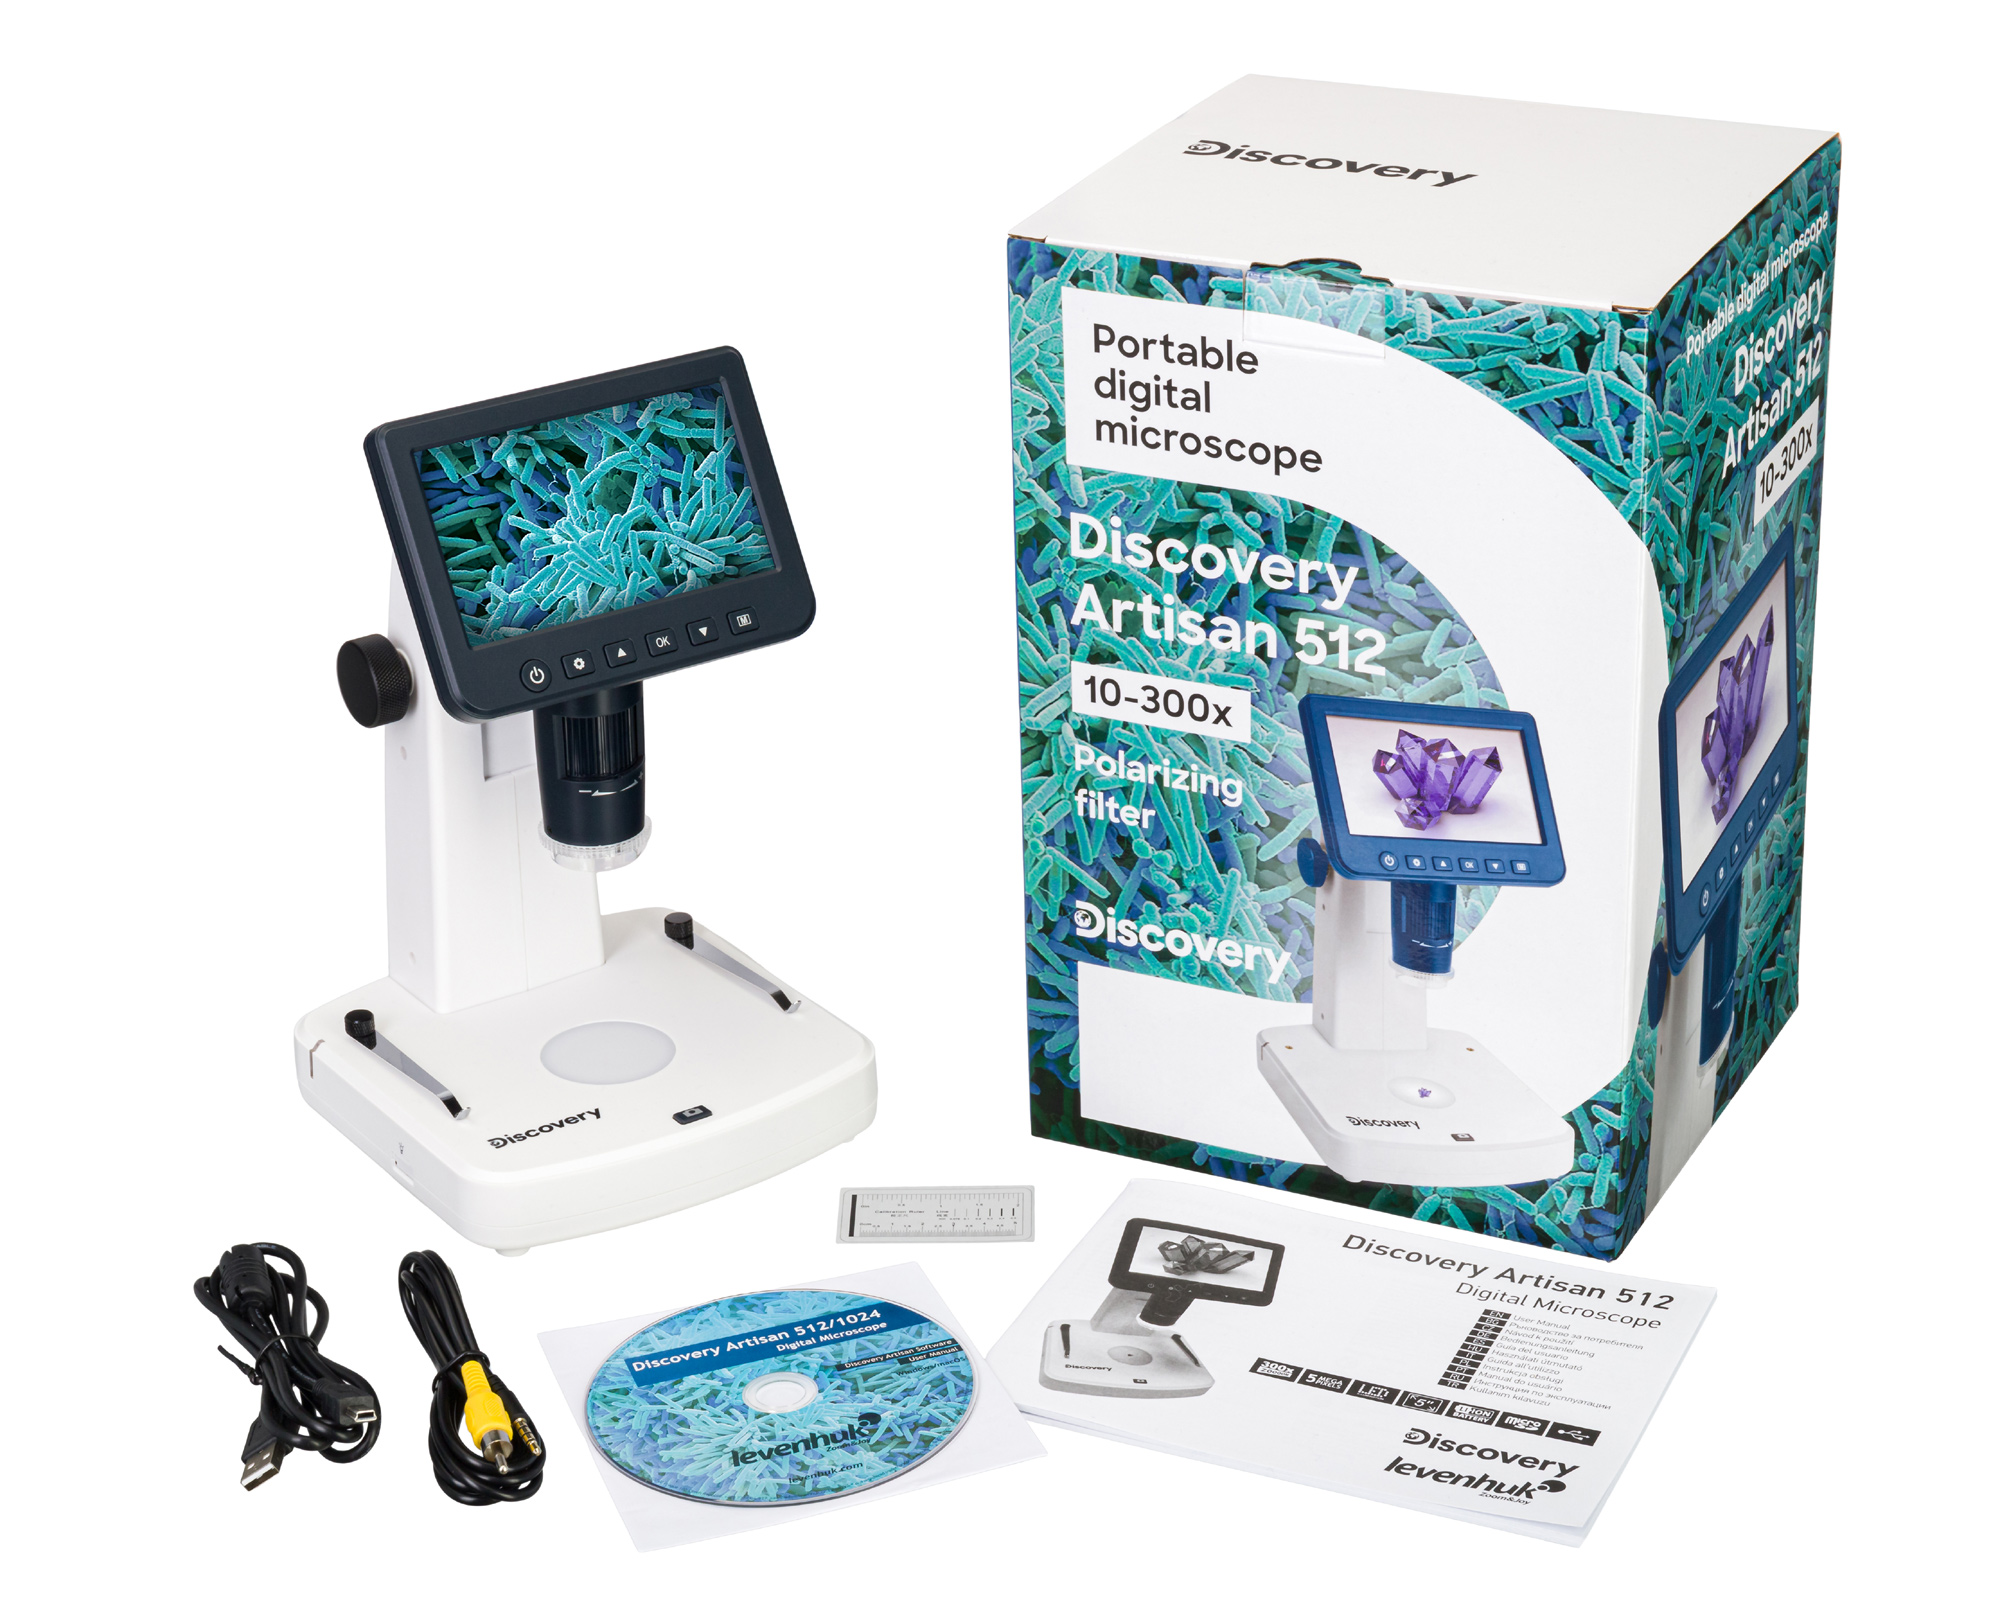 Součástí dodávky je digitální mikroskop Discovery Artisan 512, AC adaptér, USB a AV kabel, kalibrační stupnice, podpůrné CD se softwarem, záruční list a uživatelský návod.